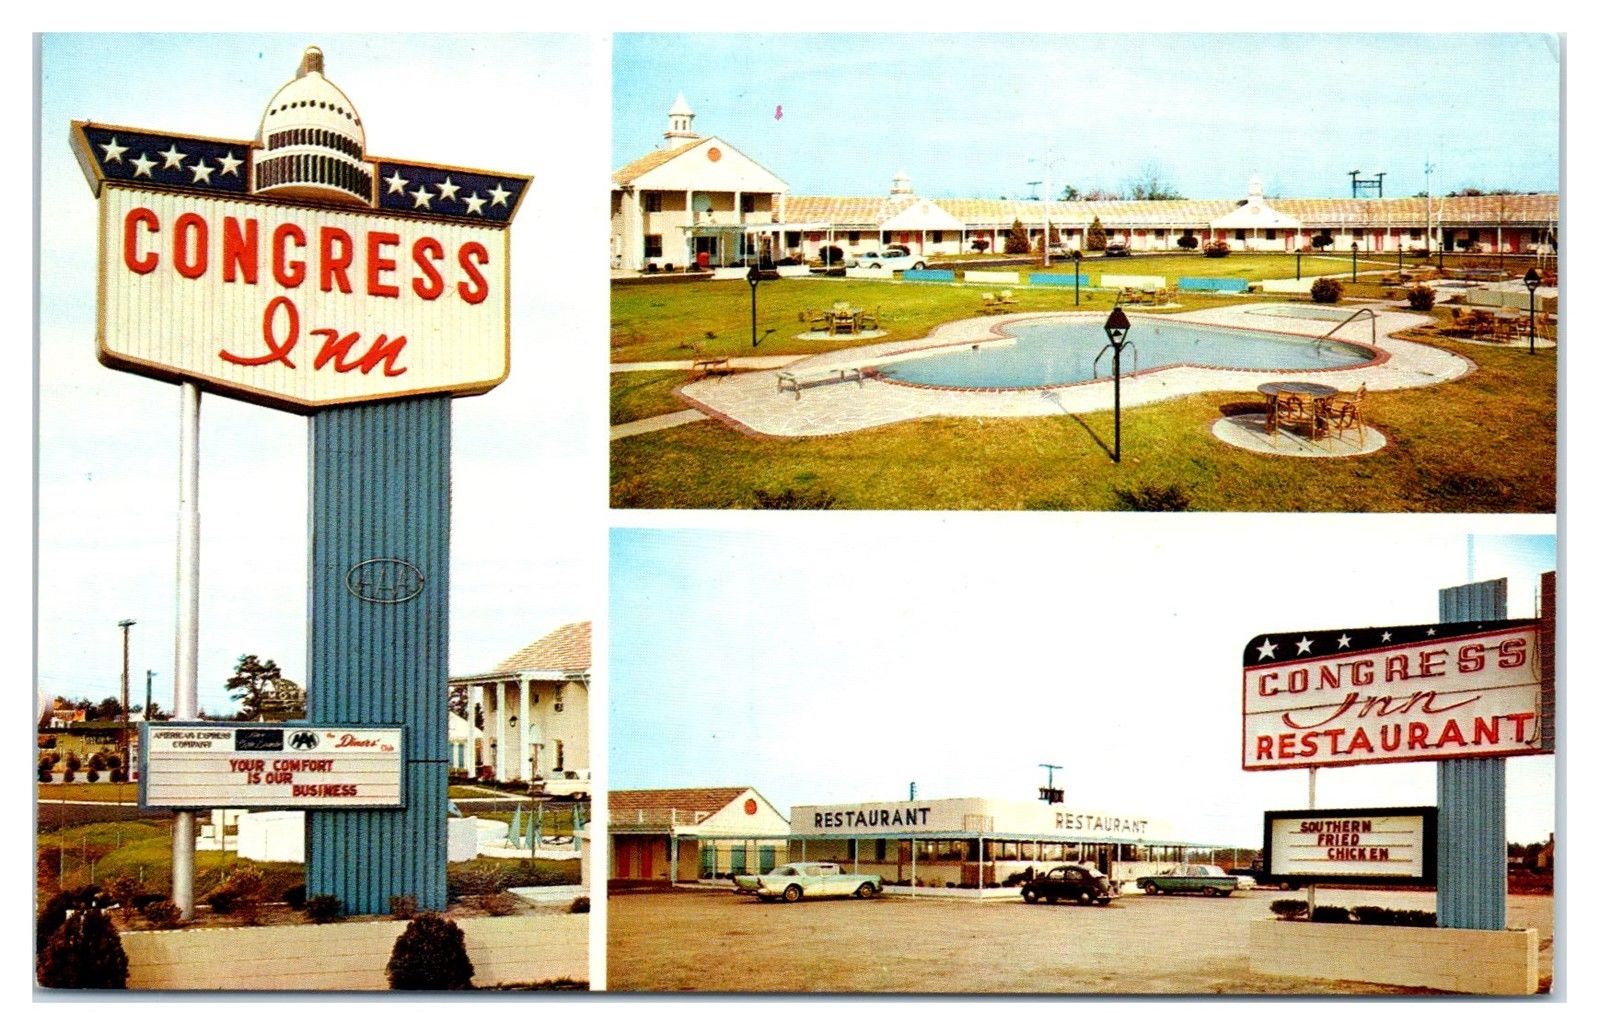 Congress inn motel